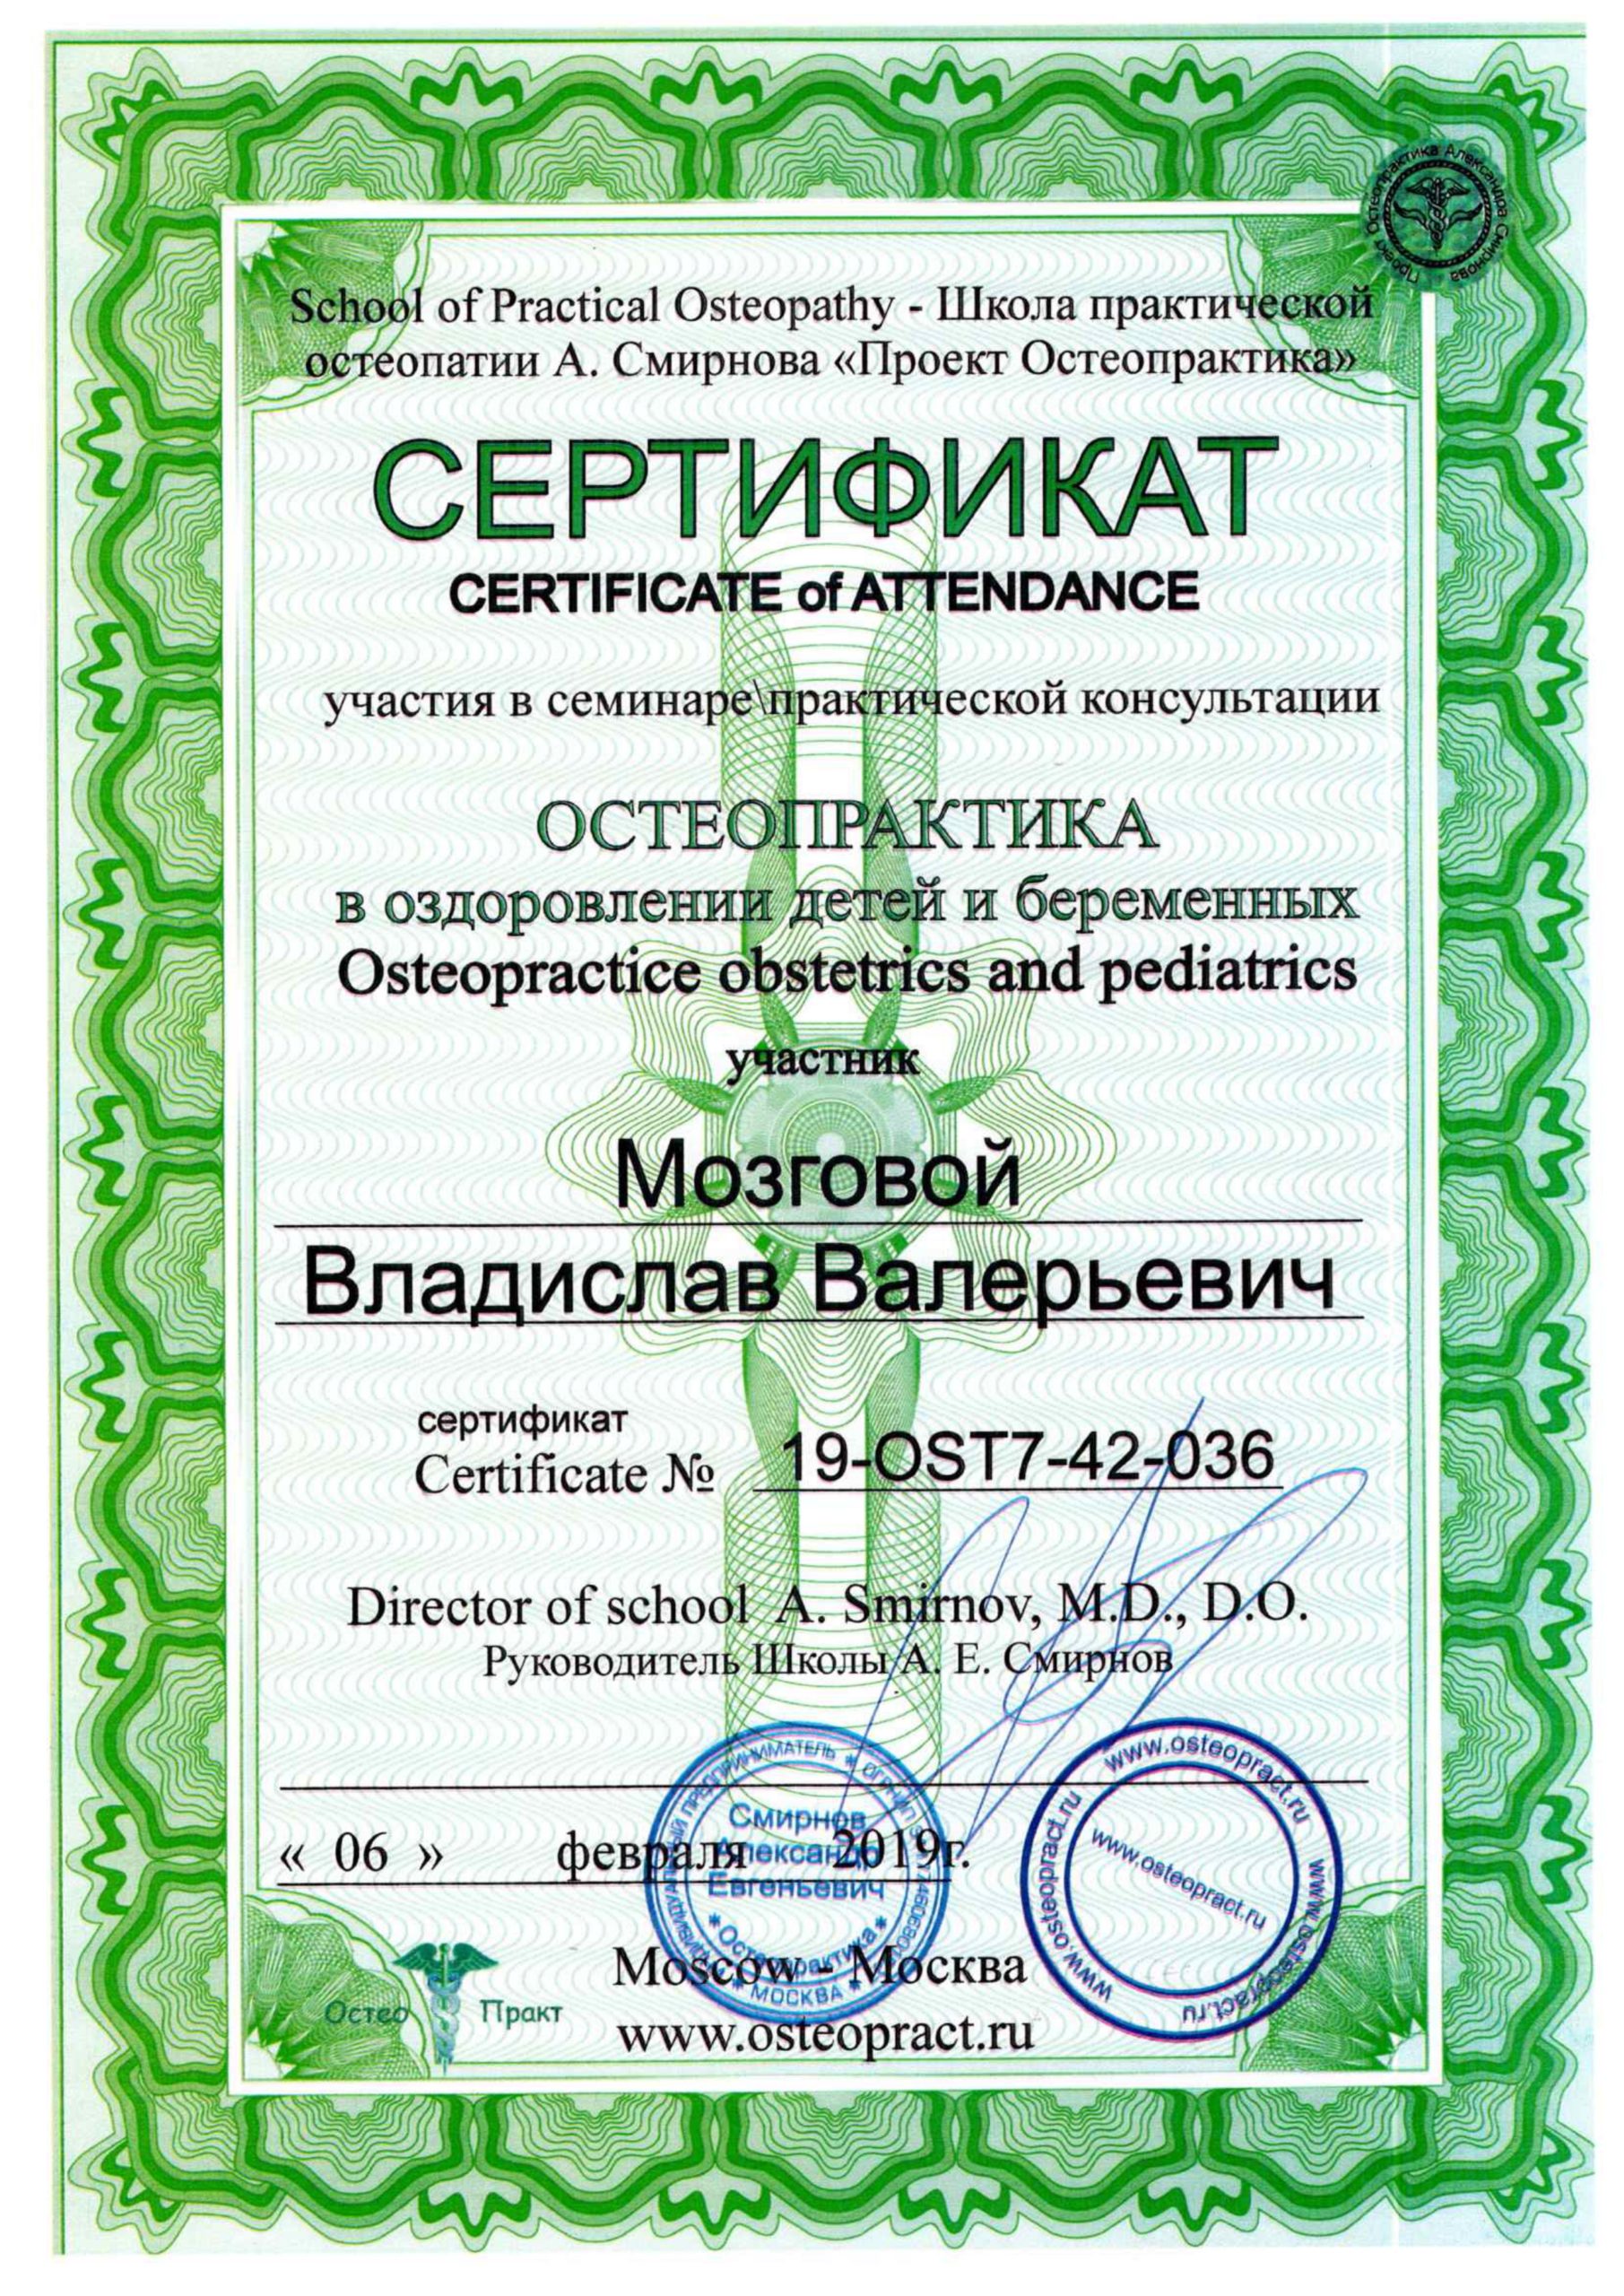 Сертификат Мозговой 5